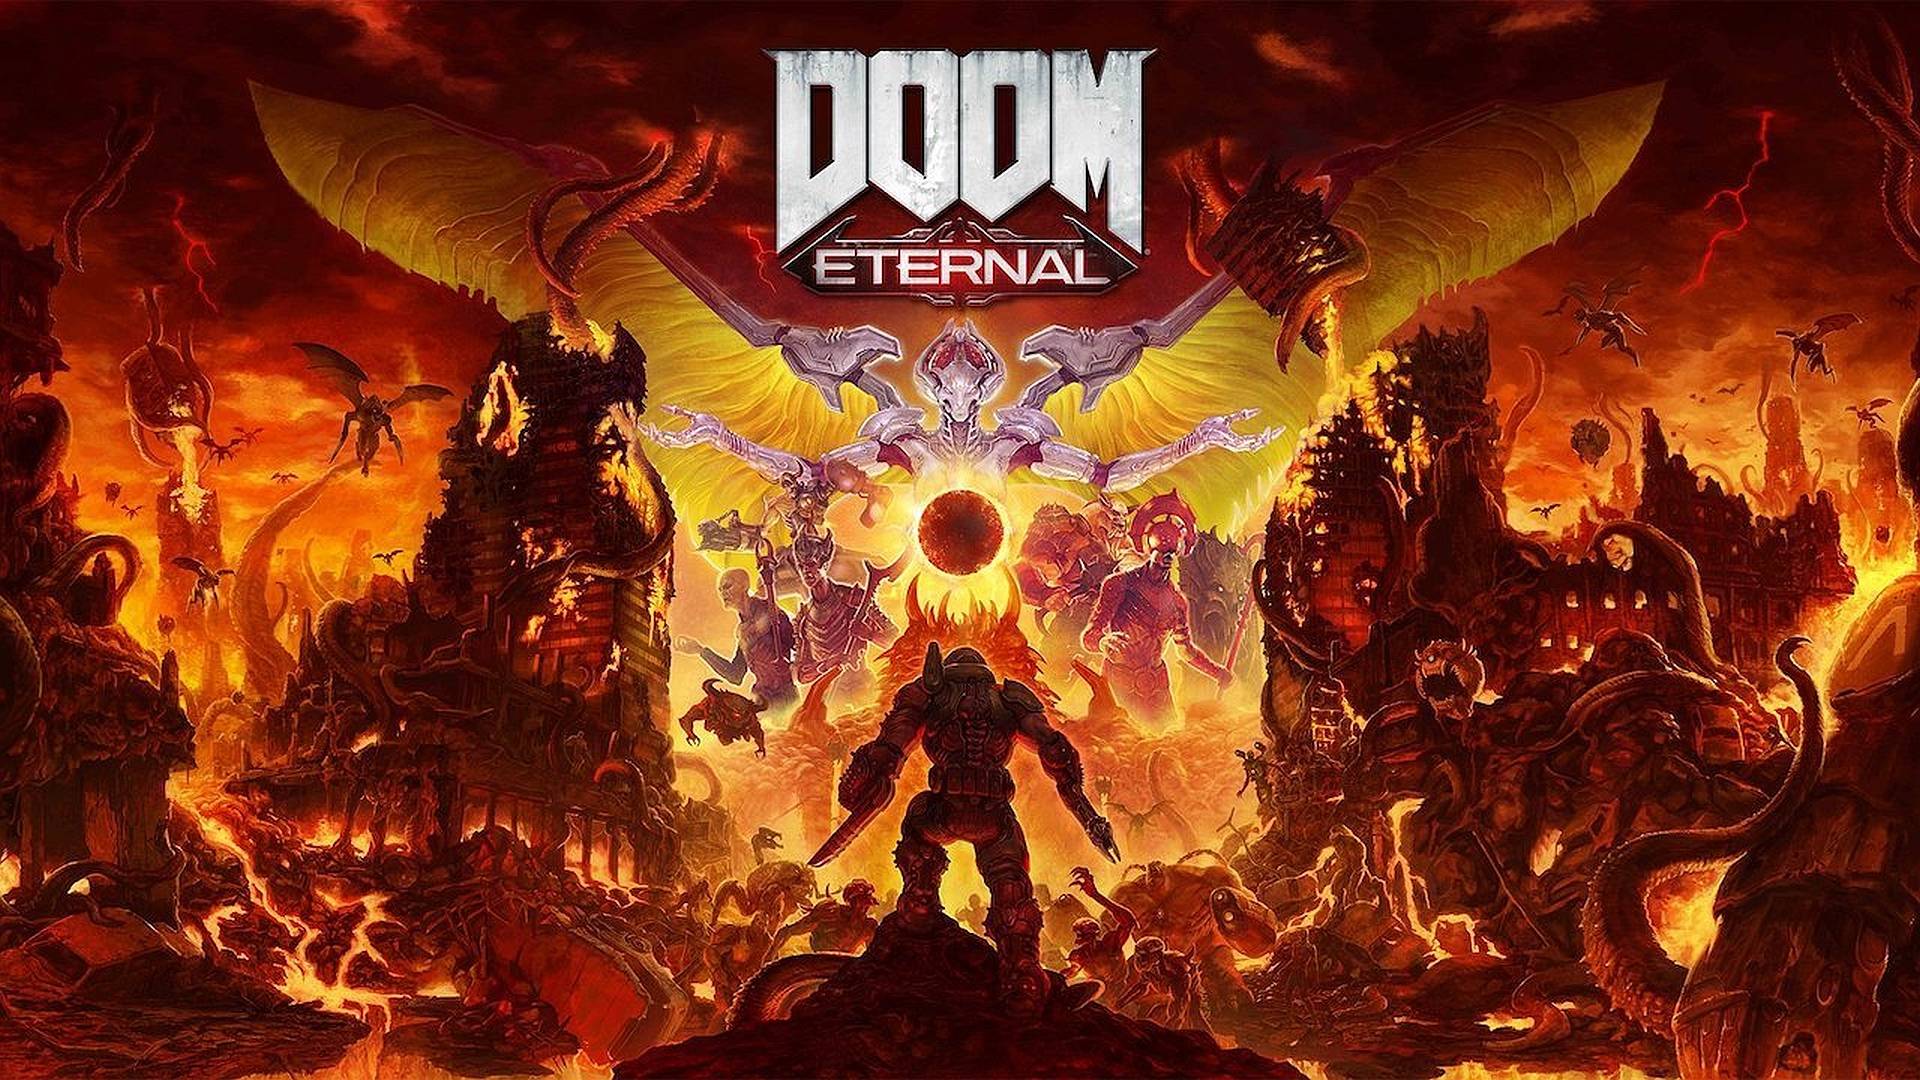 DOOM Eternal has been delayed